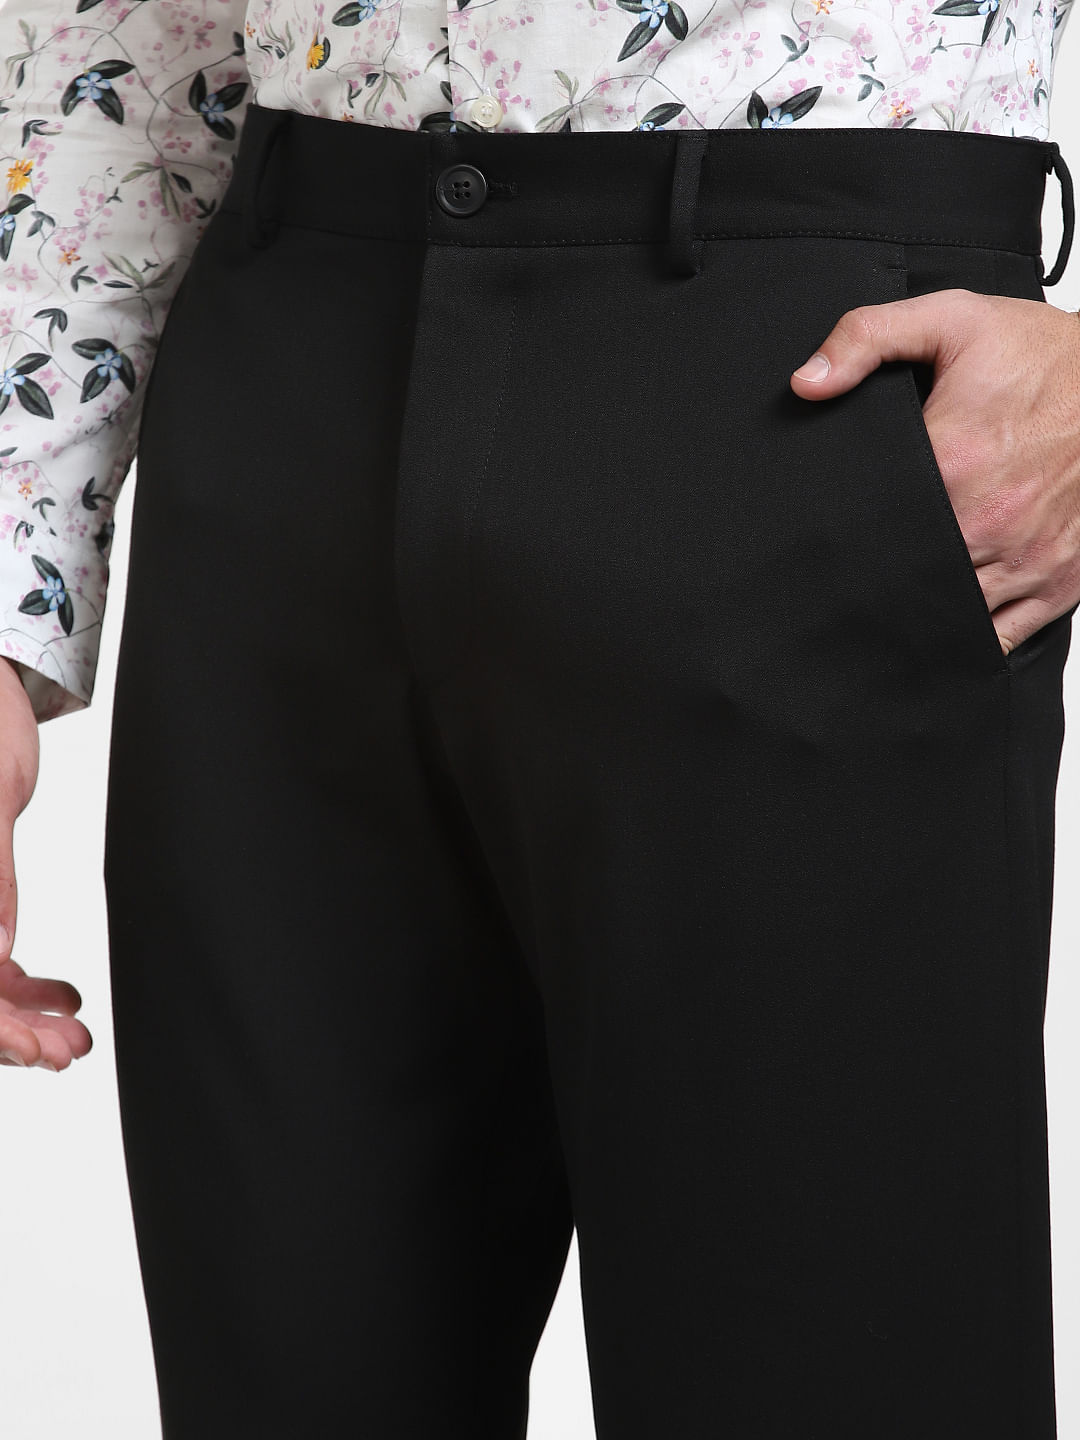 KRG FASHION_Men Tousers Pant/Combo Slim Fit Formal Trouser For Men/Regular Fit  Formal Trousers Paints